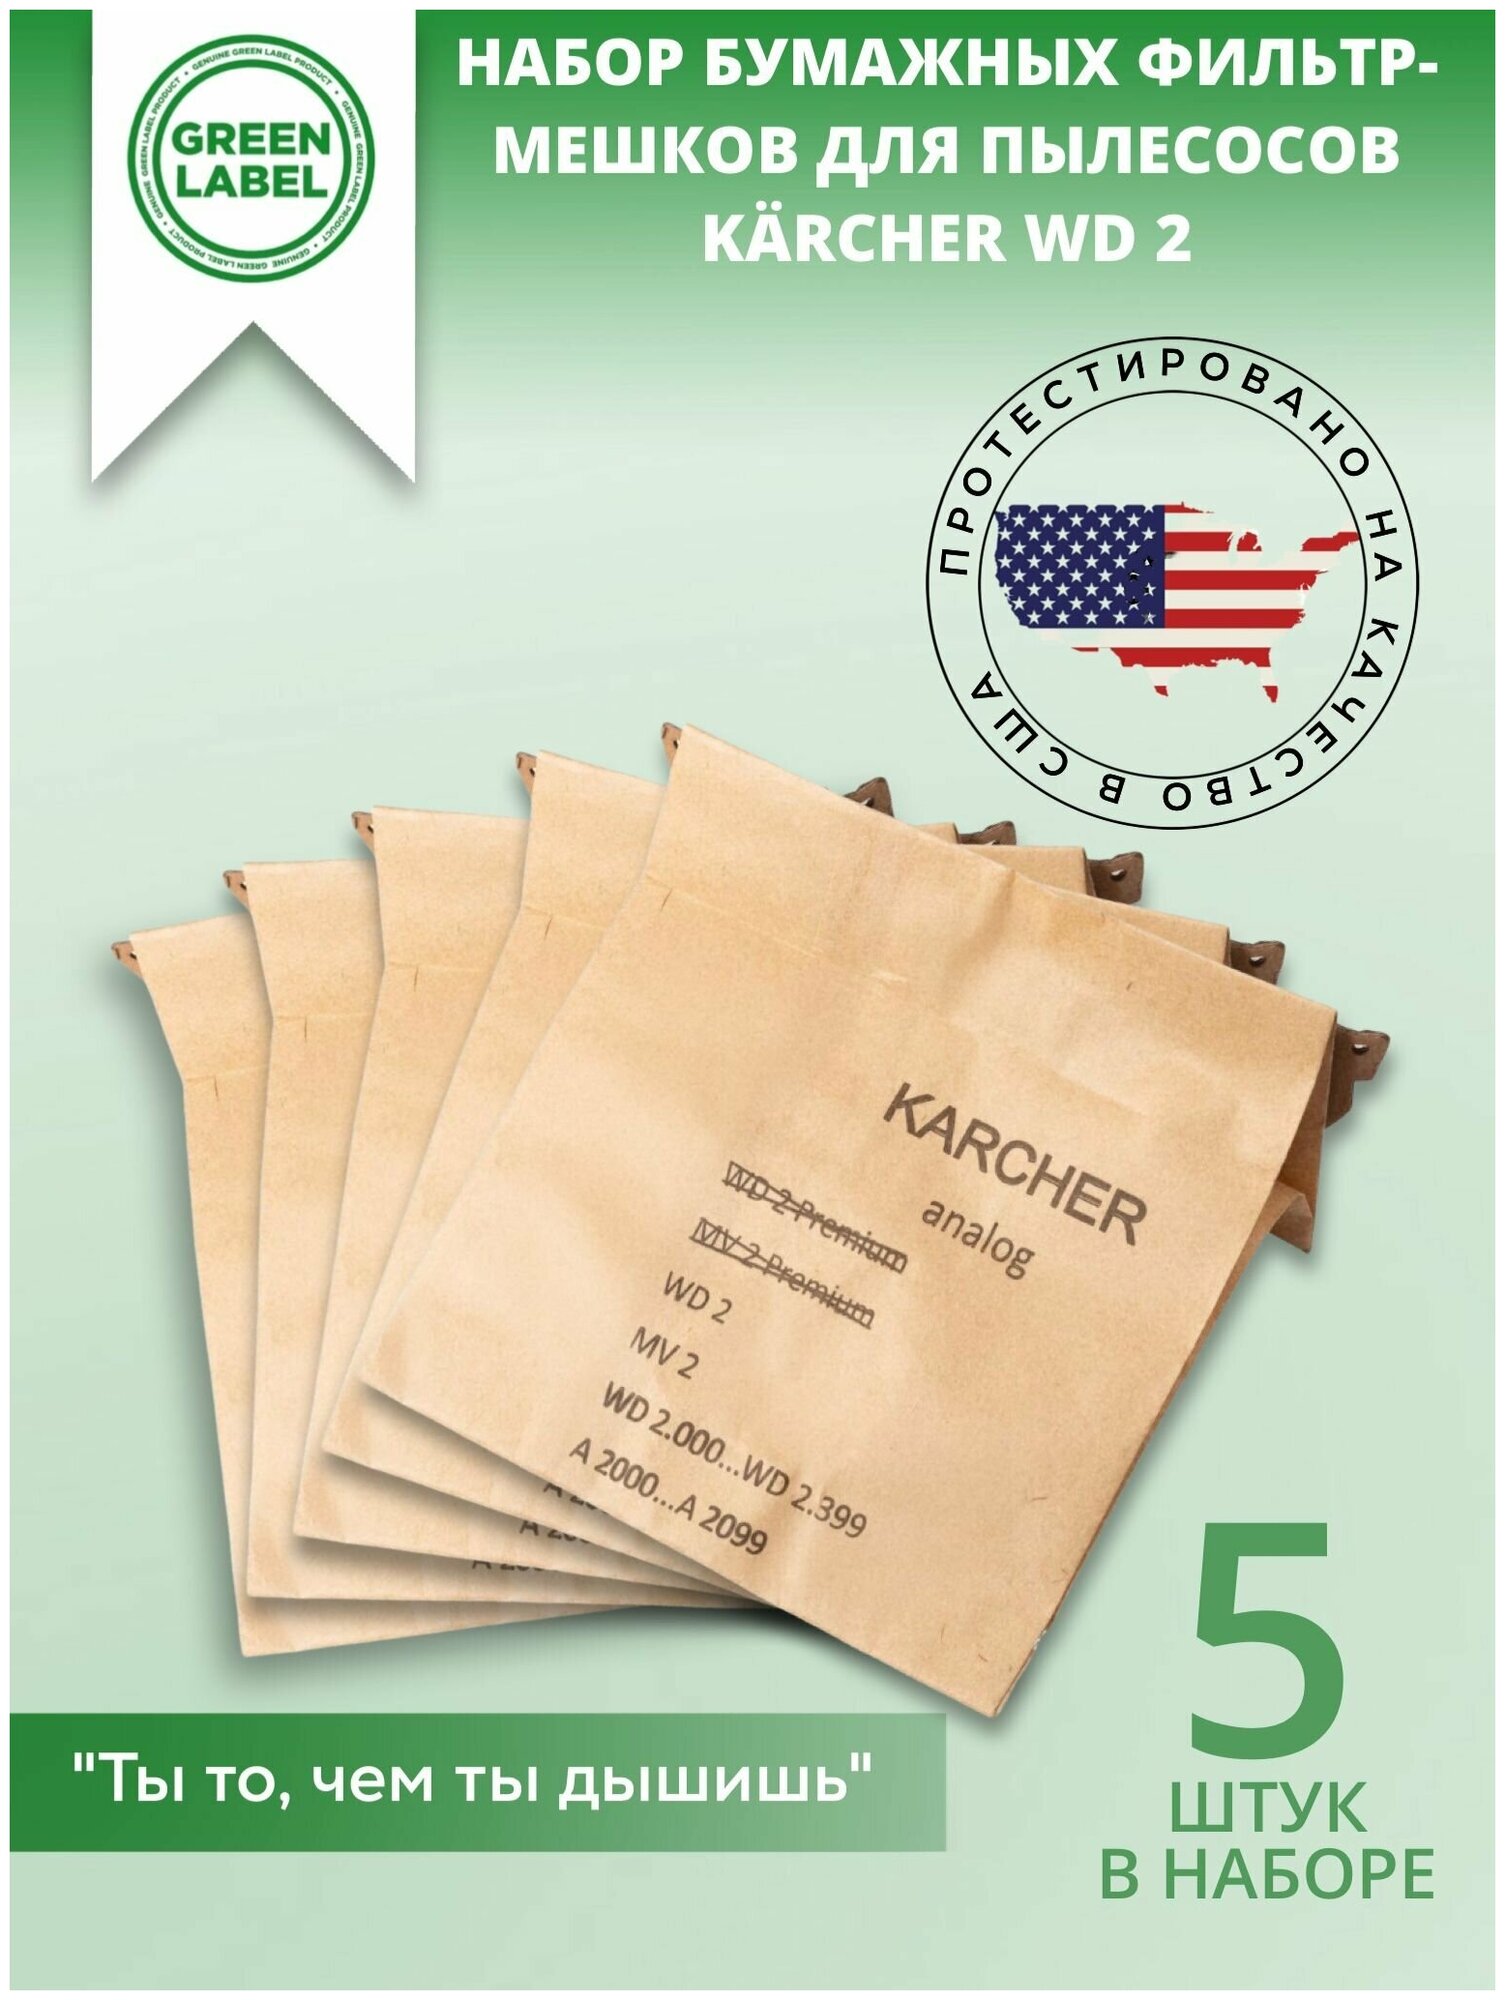 Green Label / Набор бумажных фильтр мешков пылесборников 6.904 322.0 для пылесосов Karcher WD 2, A 2003, A 2004, A 2024, A 2054 Me WD 2.200, MV2